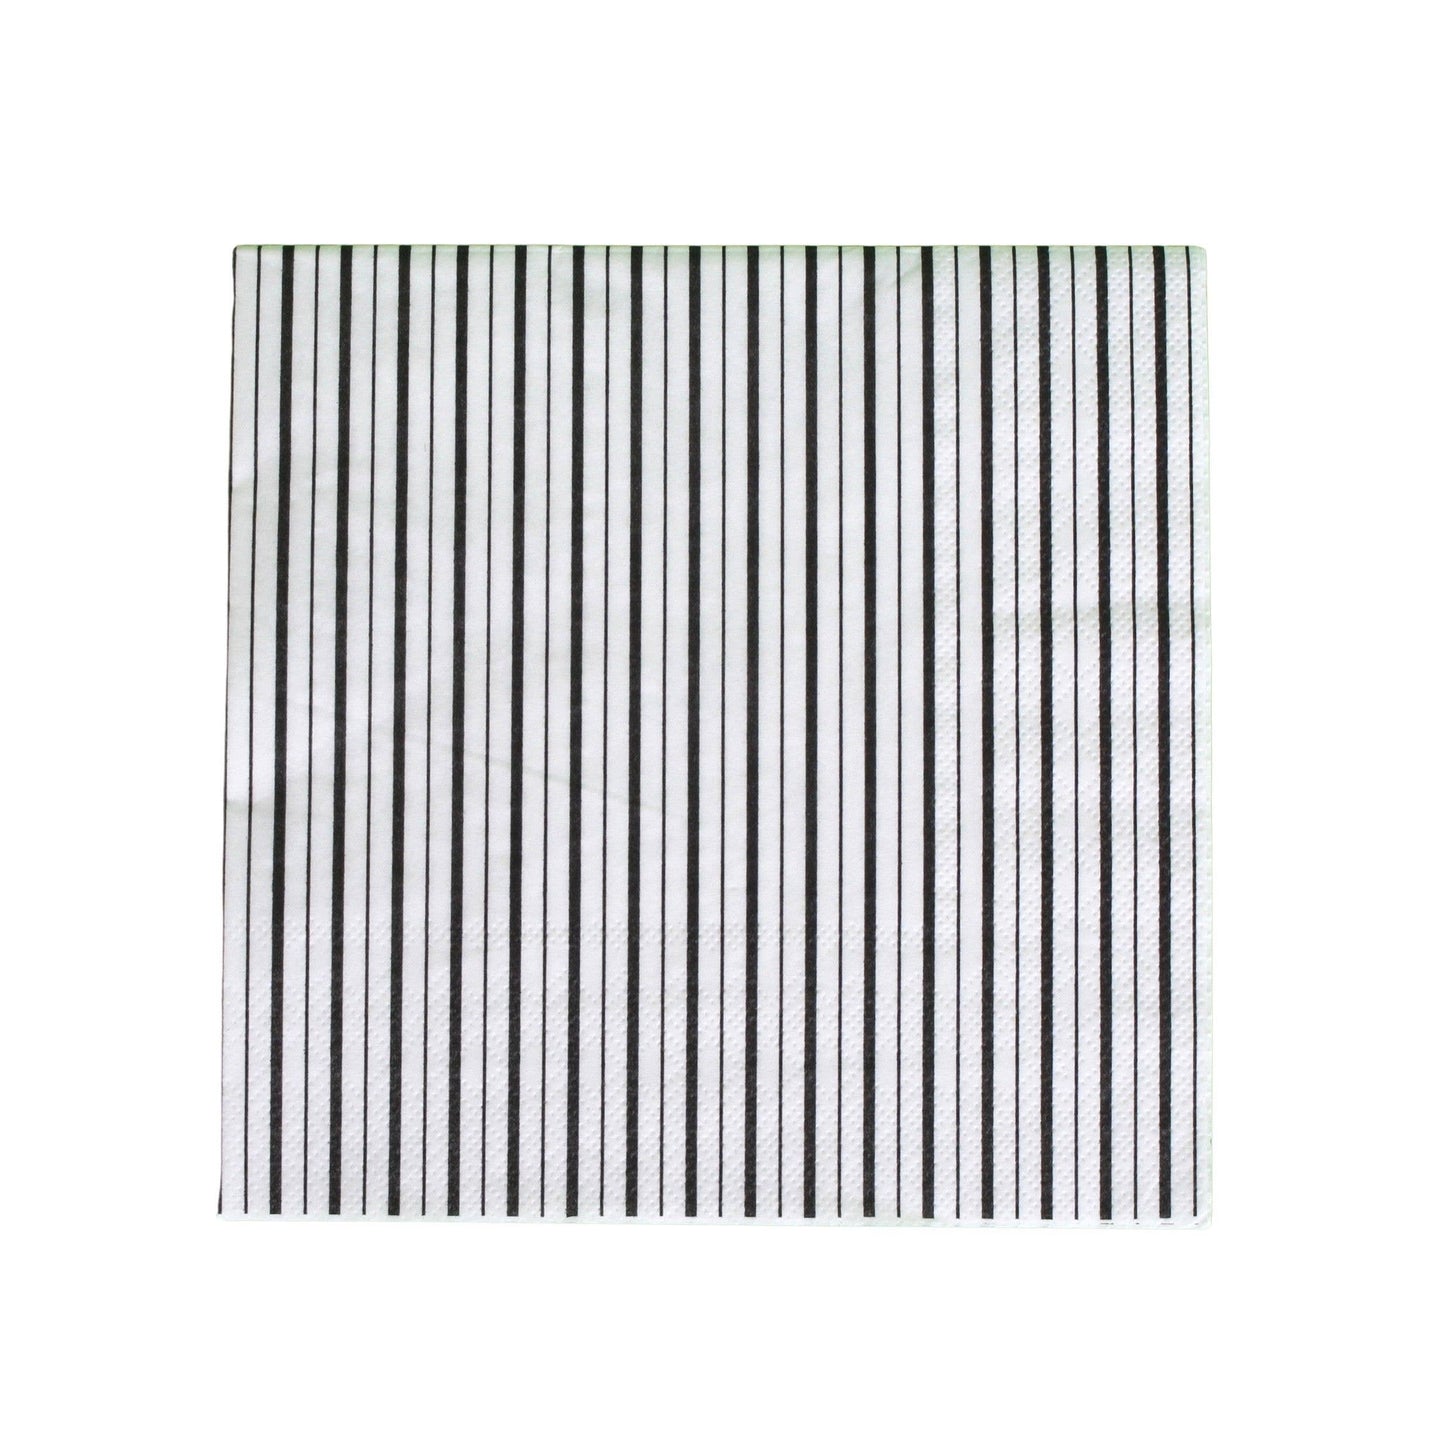 Black and White Fine Stripes Napkins (Set of 16)